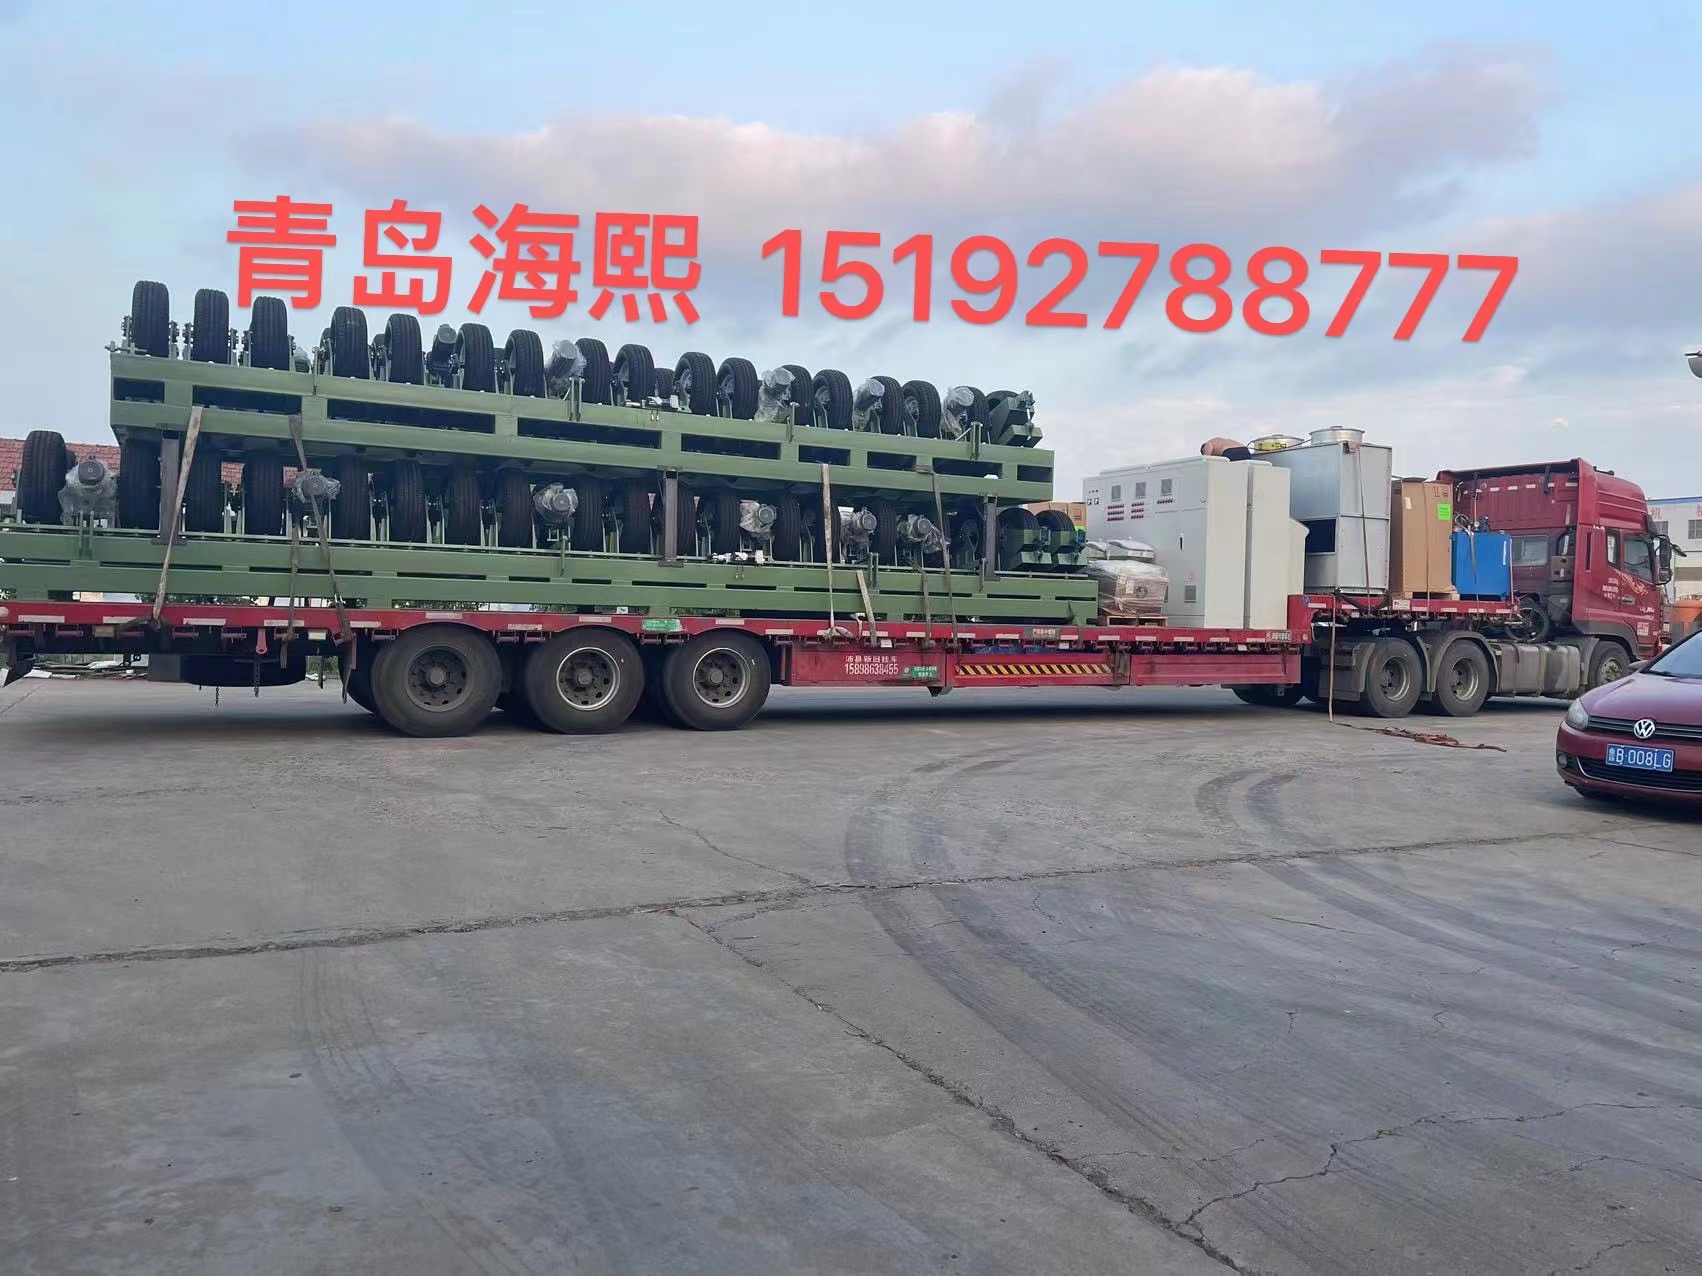 Hebei Huadun pipe manufacturing Co., Ltd. first ca